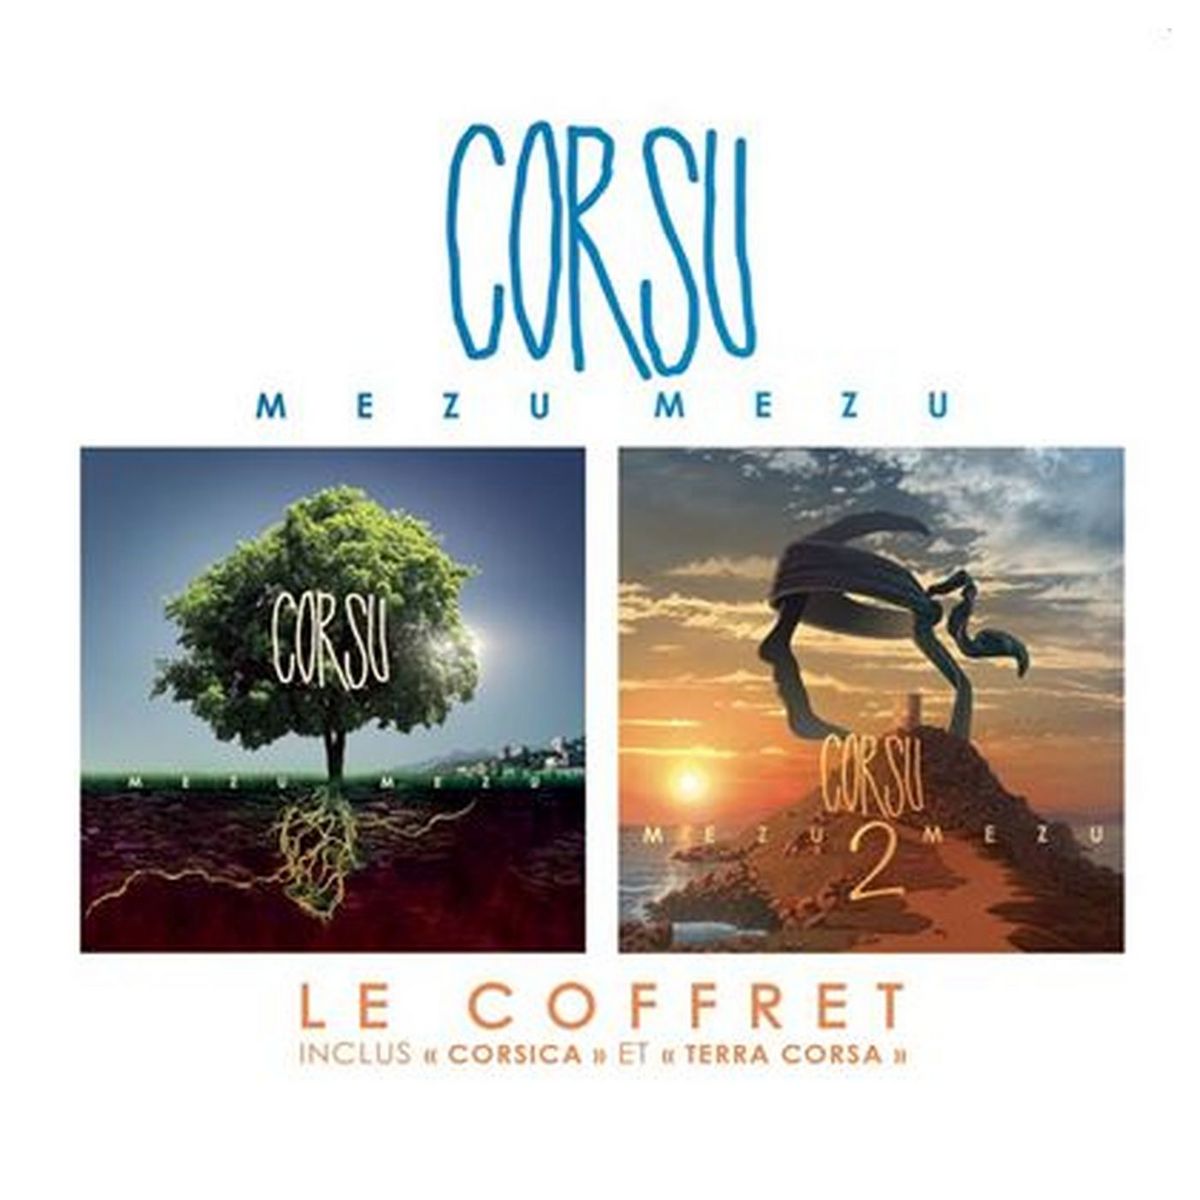 Corsu - Mezu Mezu 1&2 Le Coffret CD